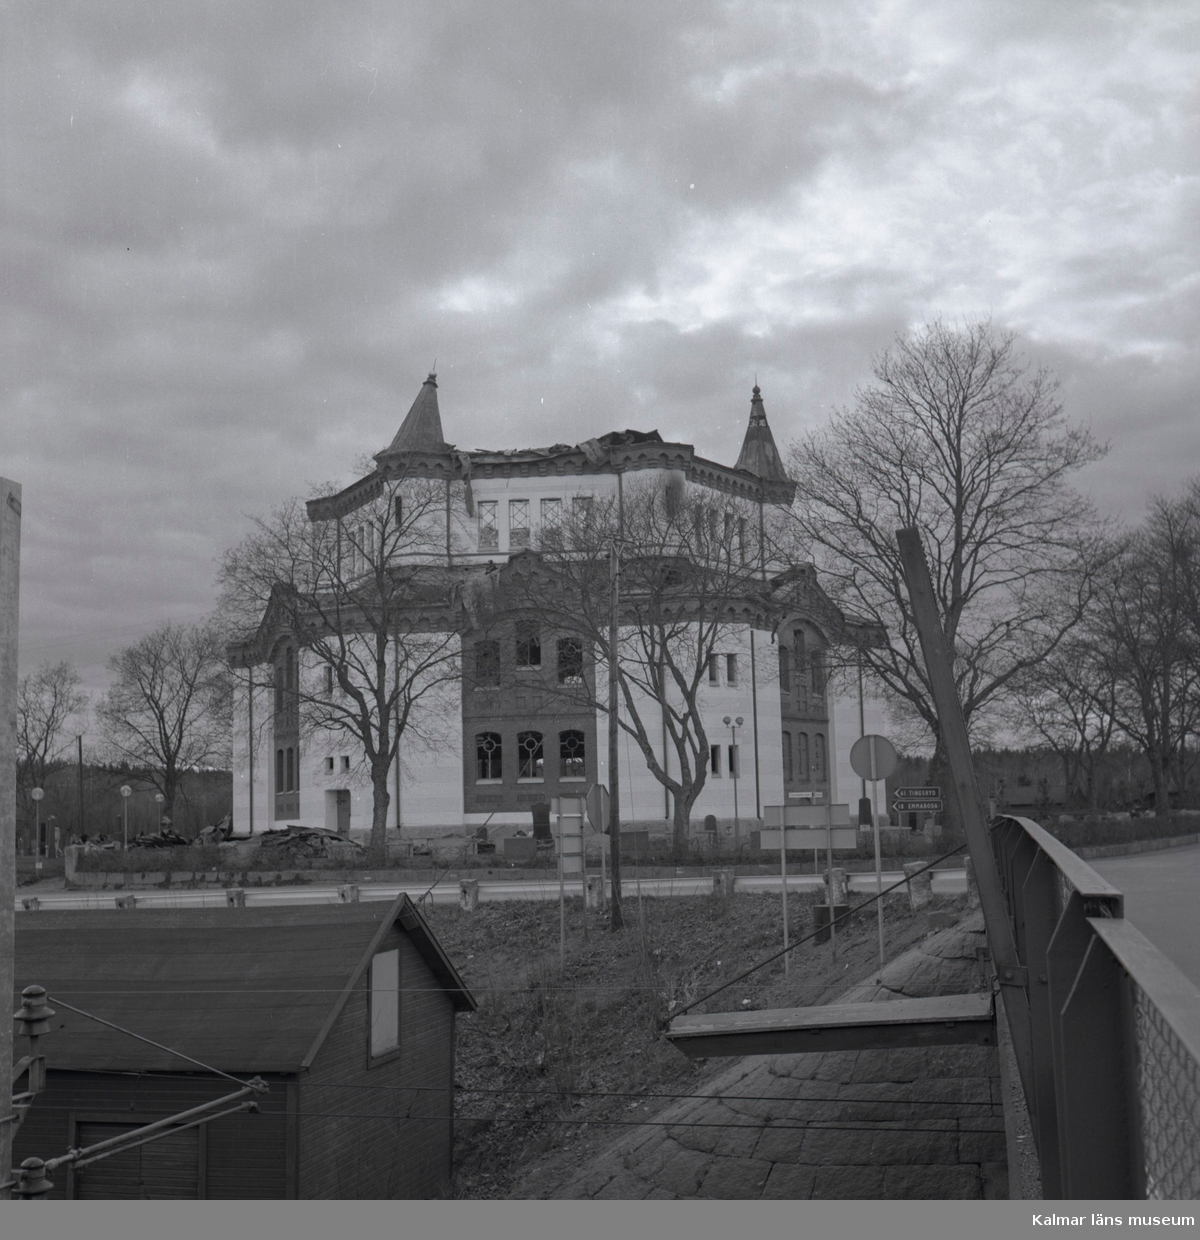 Örsjö kyrka är en centralkyrka.  Vid en brand påsken 1974 lämnades endast murväggarna kvar. Kyrkan återuppbyggdes på rekordtid, och med ny interiör ritad av arkitekt Jerk Alton återinvigdes den i september 1976.